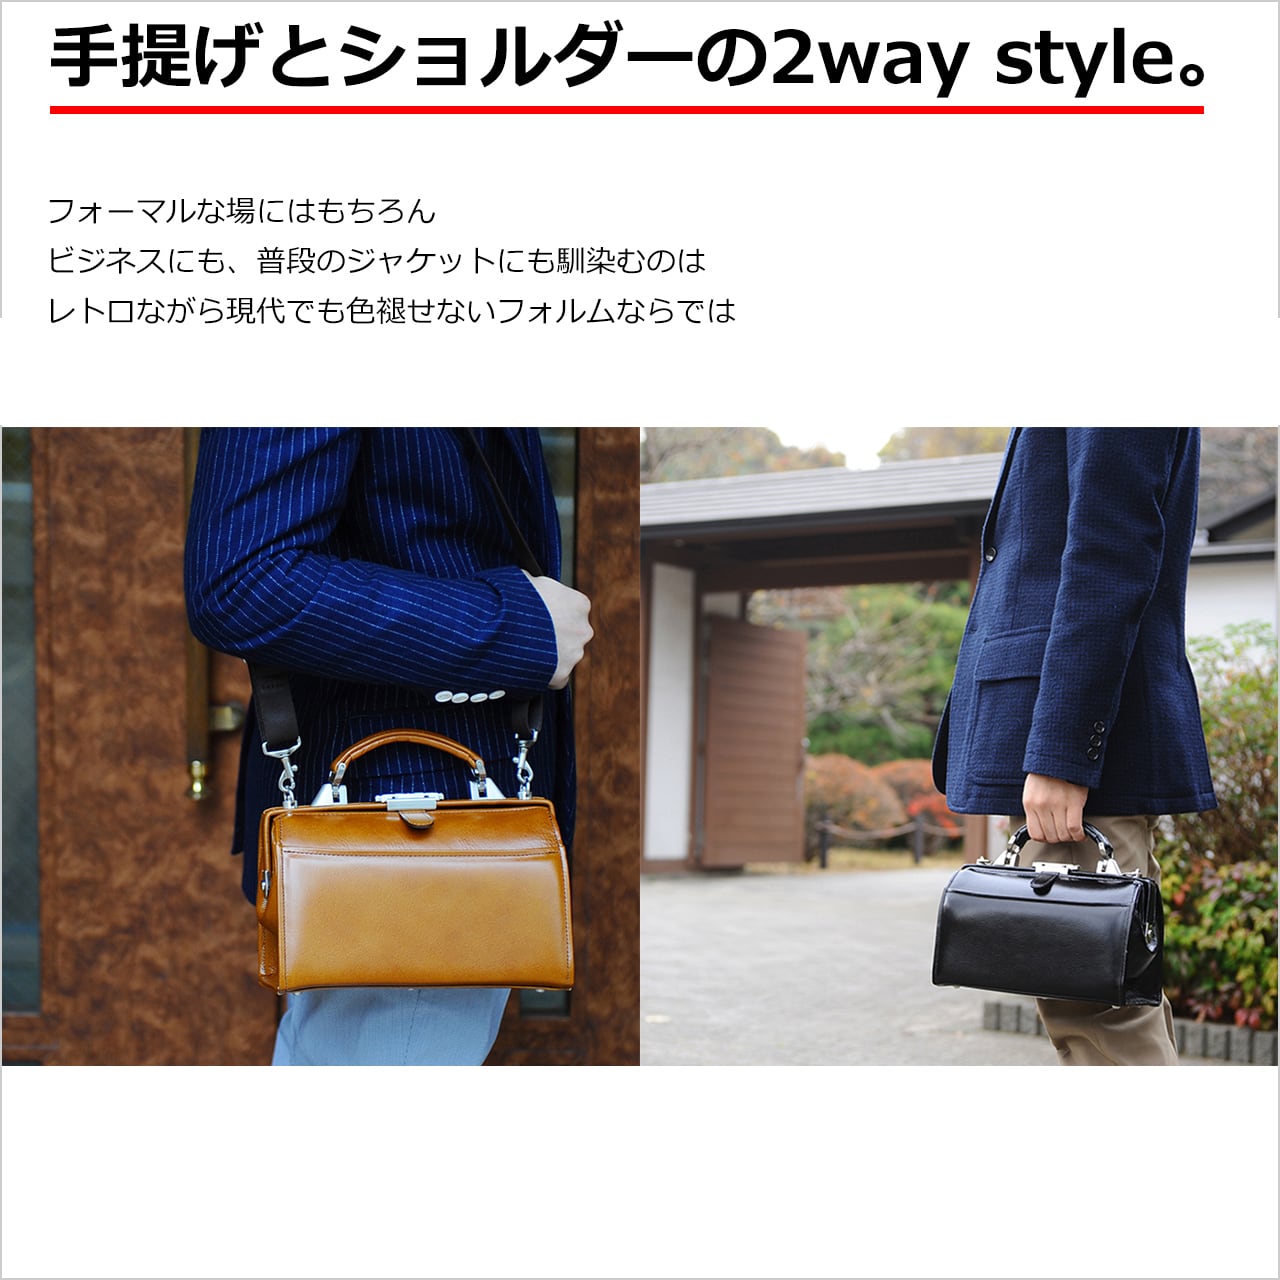 ブラック 日本製 ダレスバッグ ミニレトロダレス 豊岡の鞄職人